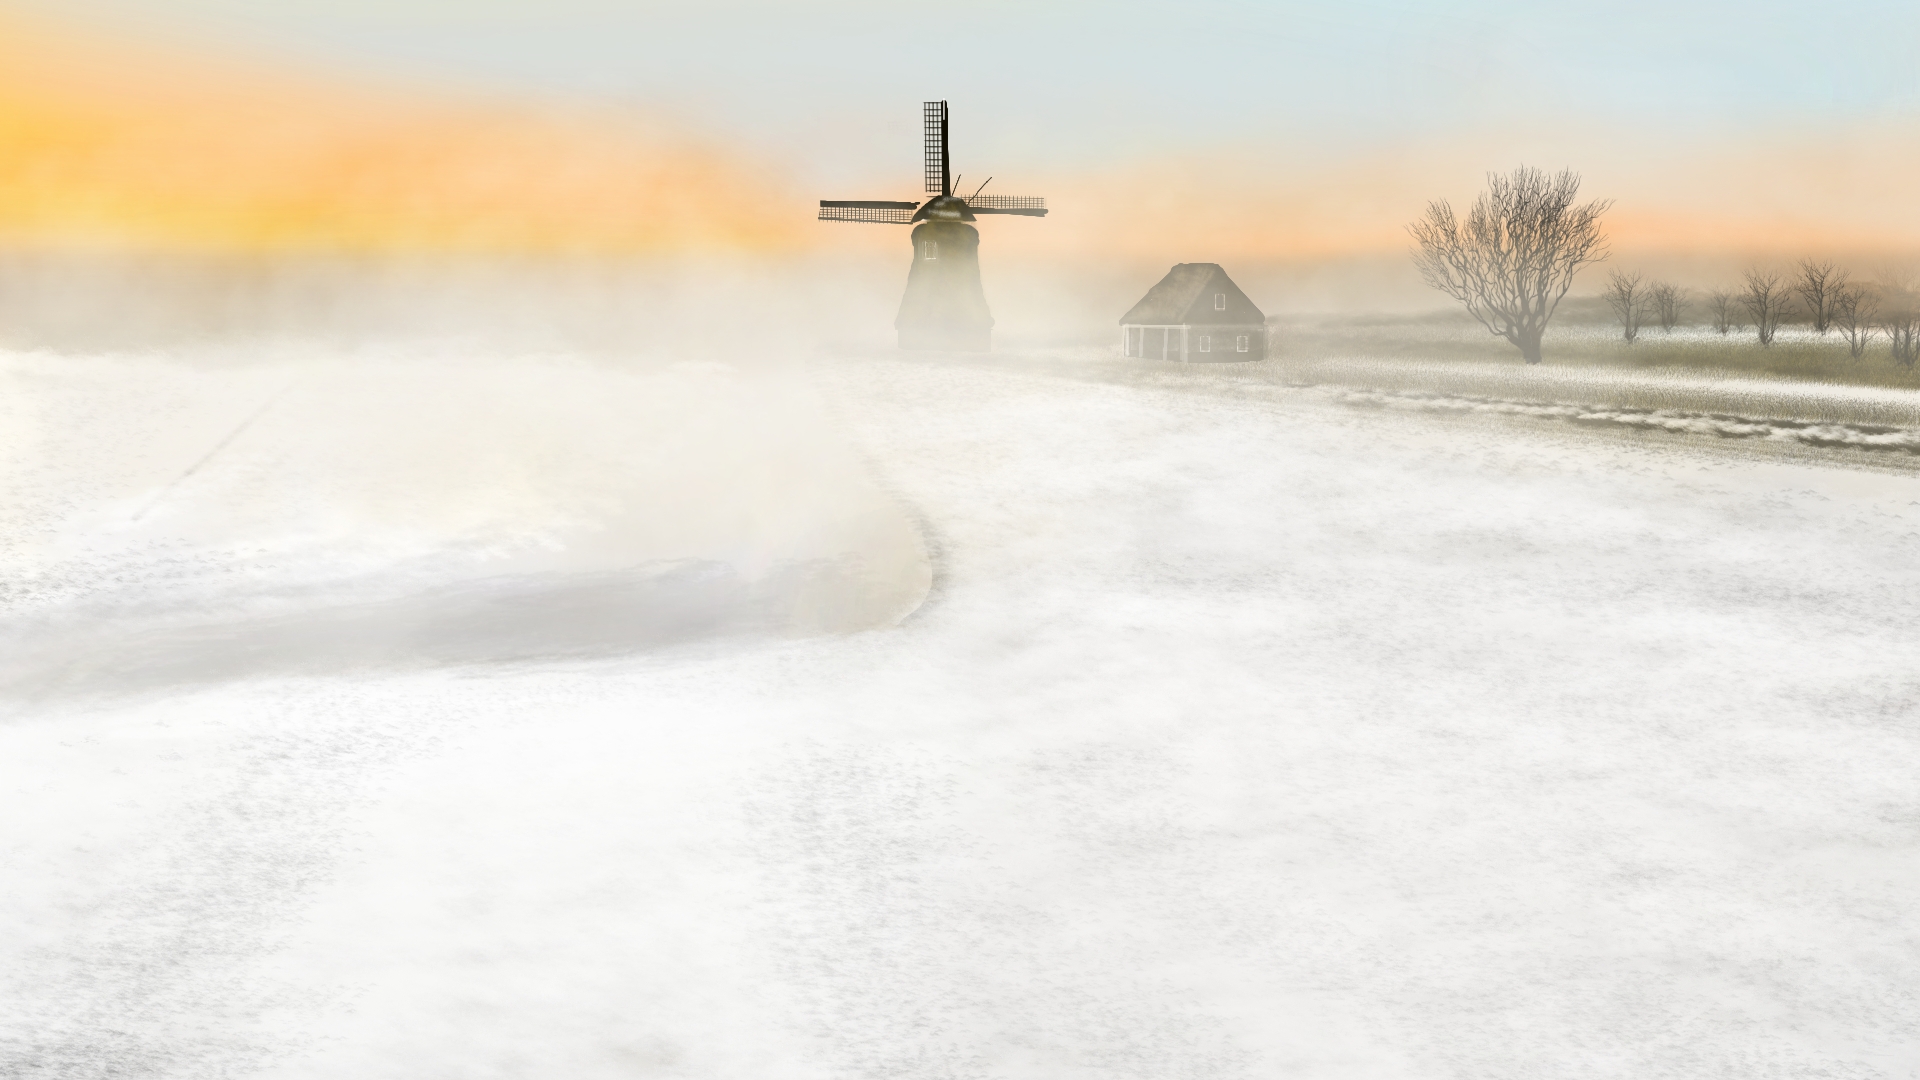 General 1920x1080 digital painting digital art windmill snow nature landscape winter